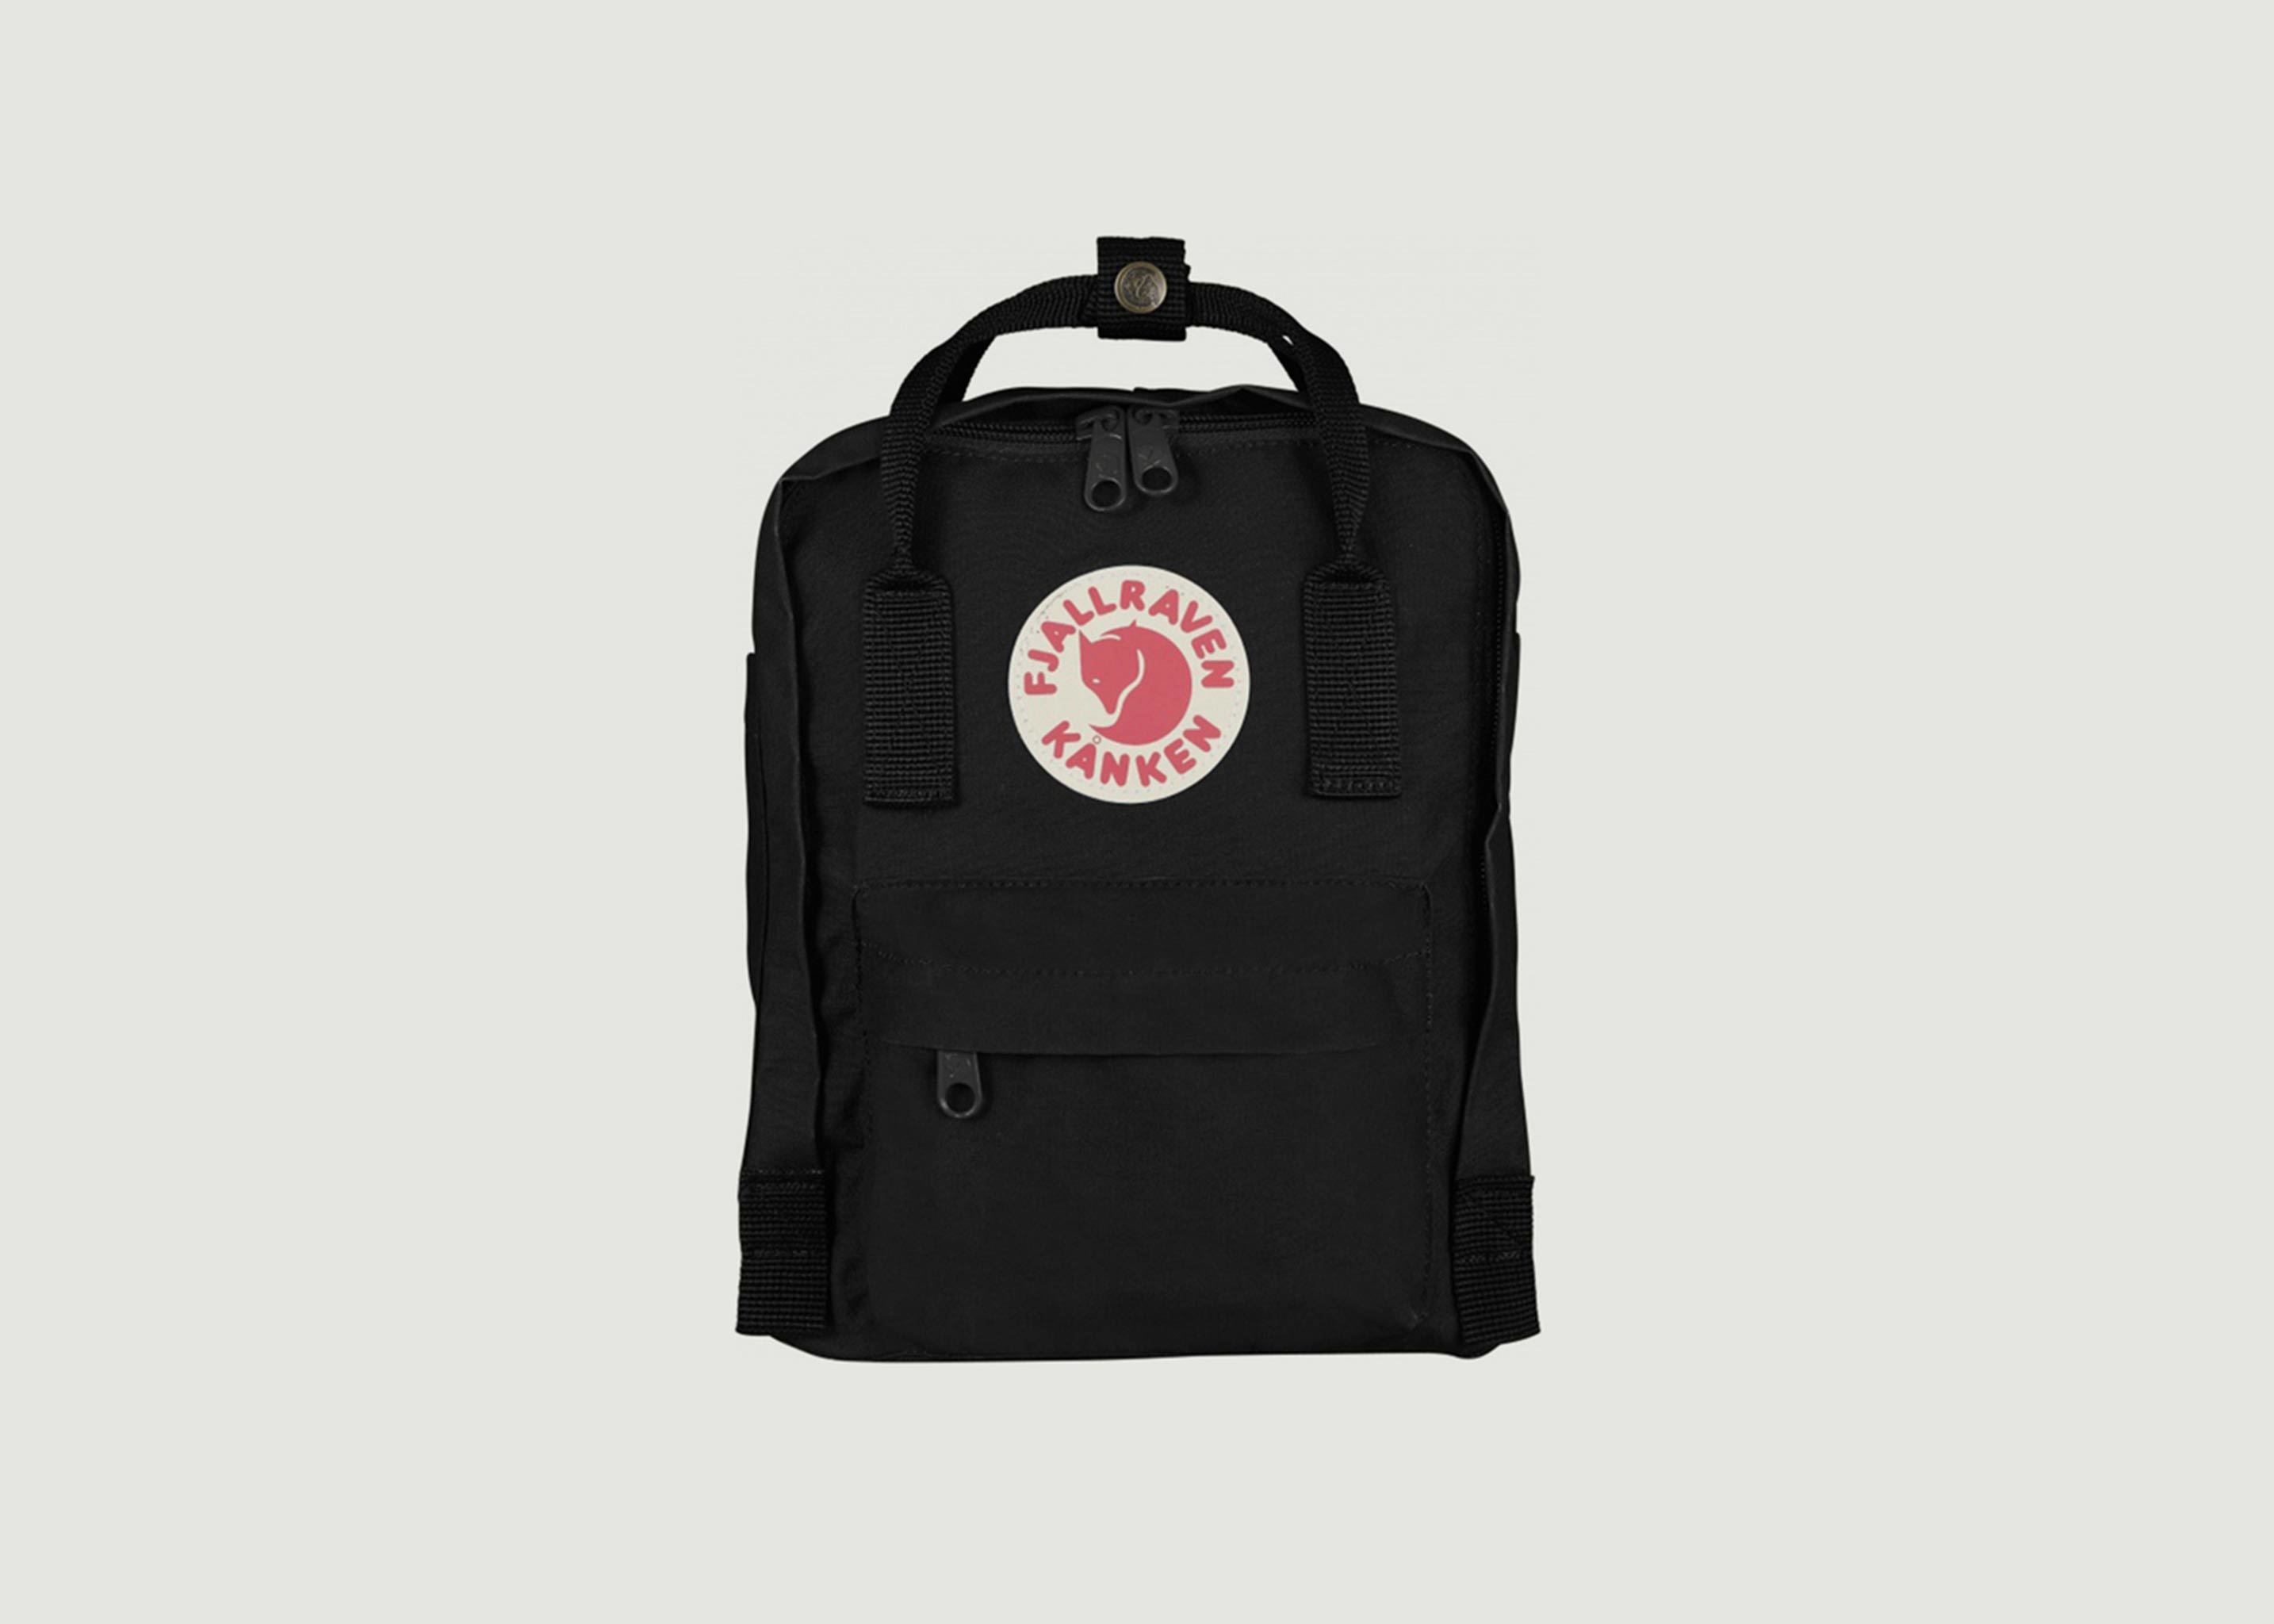 Kånken Mini Backpack - Fjällräven